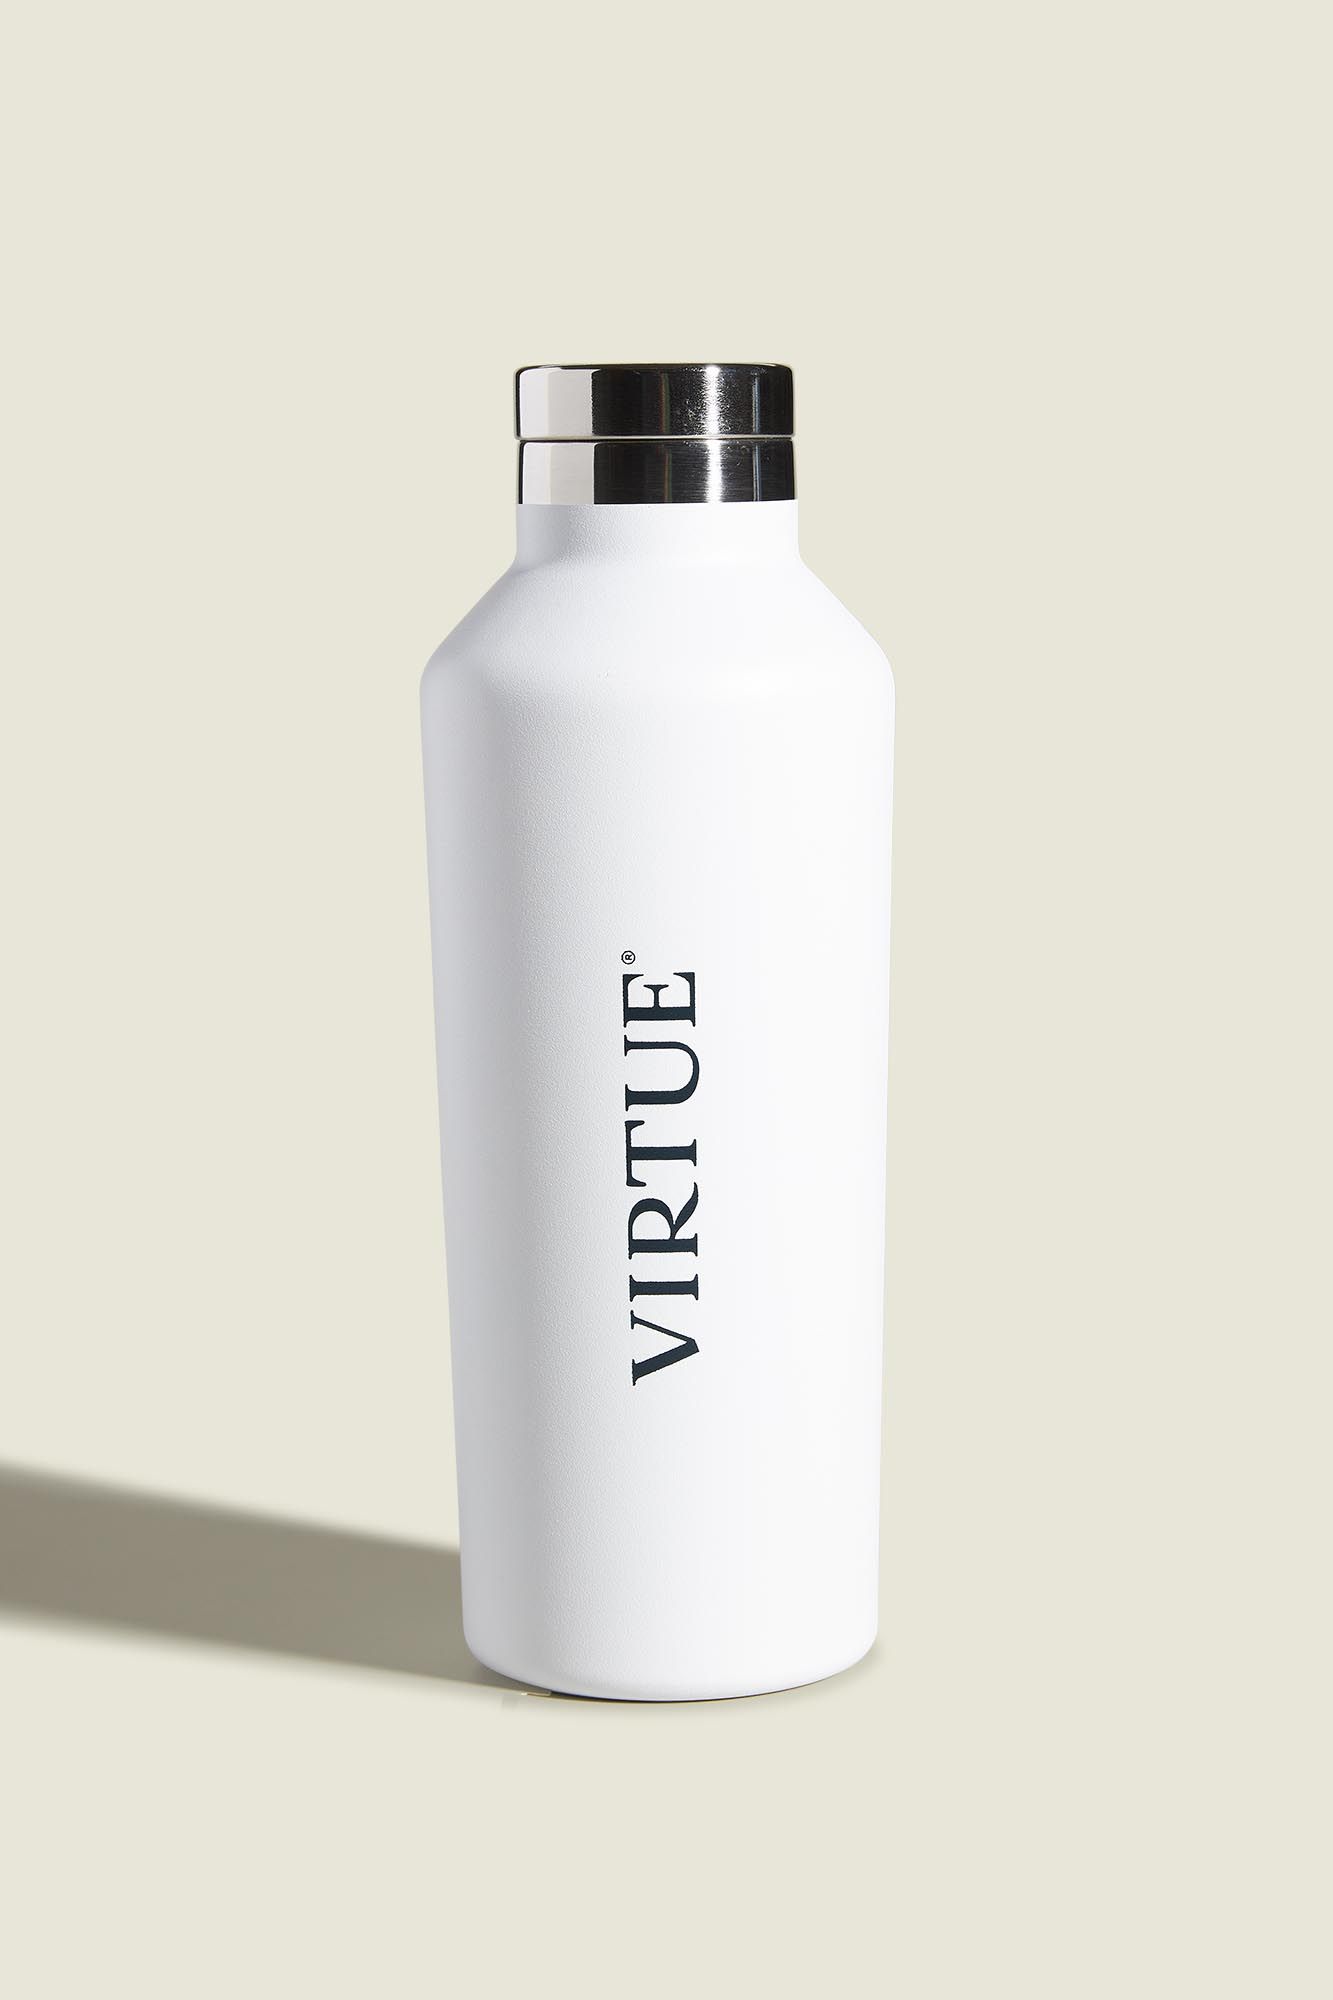 Virtue Labs